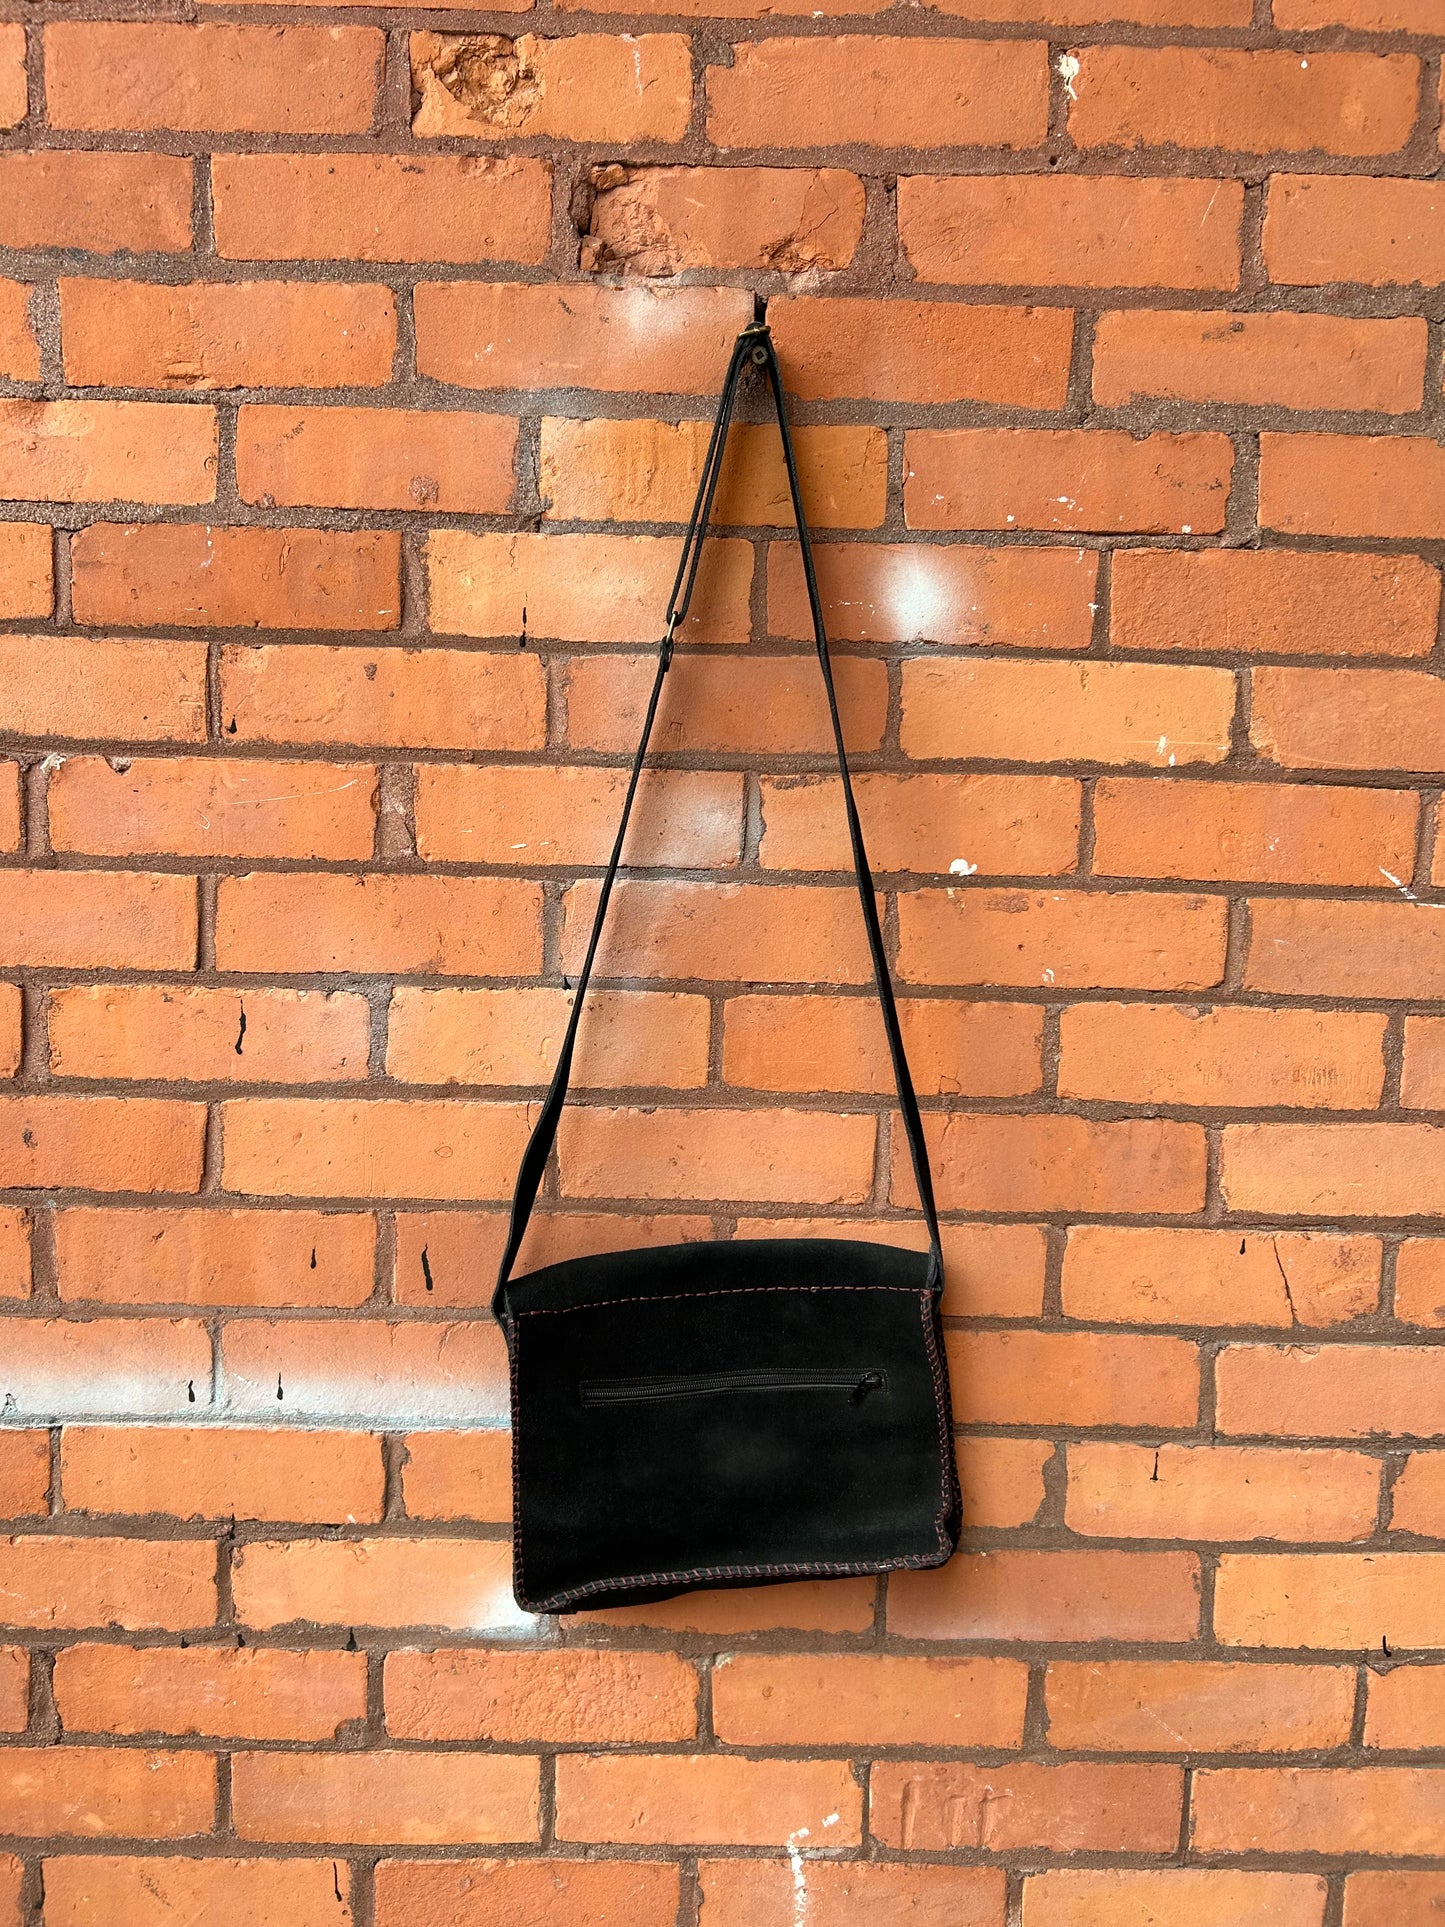 90’s Vintage Black Suede Crossbody Bag